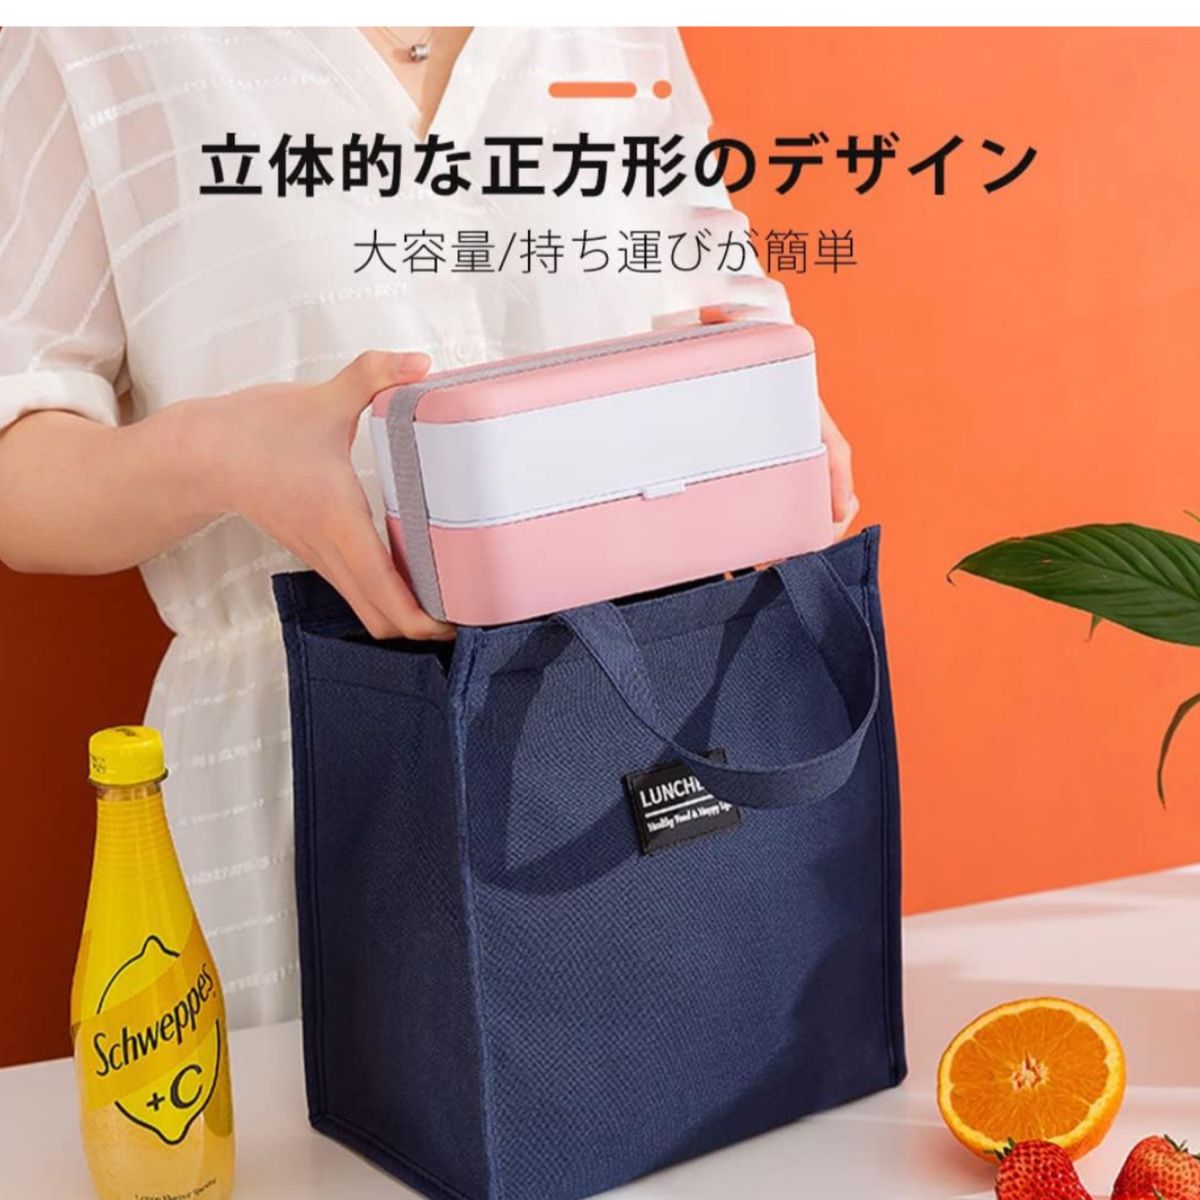 【ピンク色】ランチバッグ 弁当袋 手提げバッグ 保温保冷バッグ